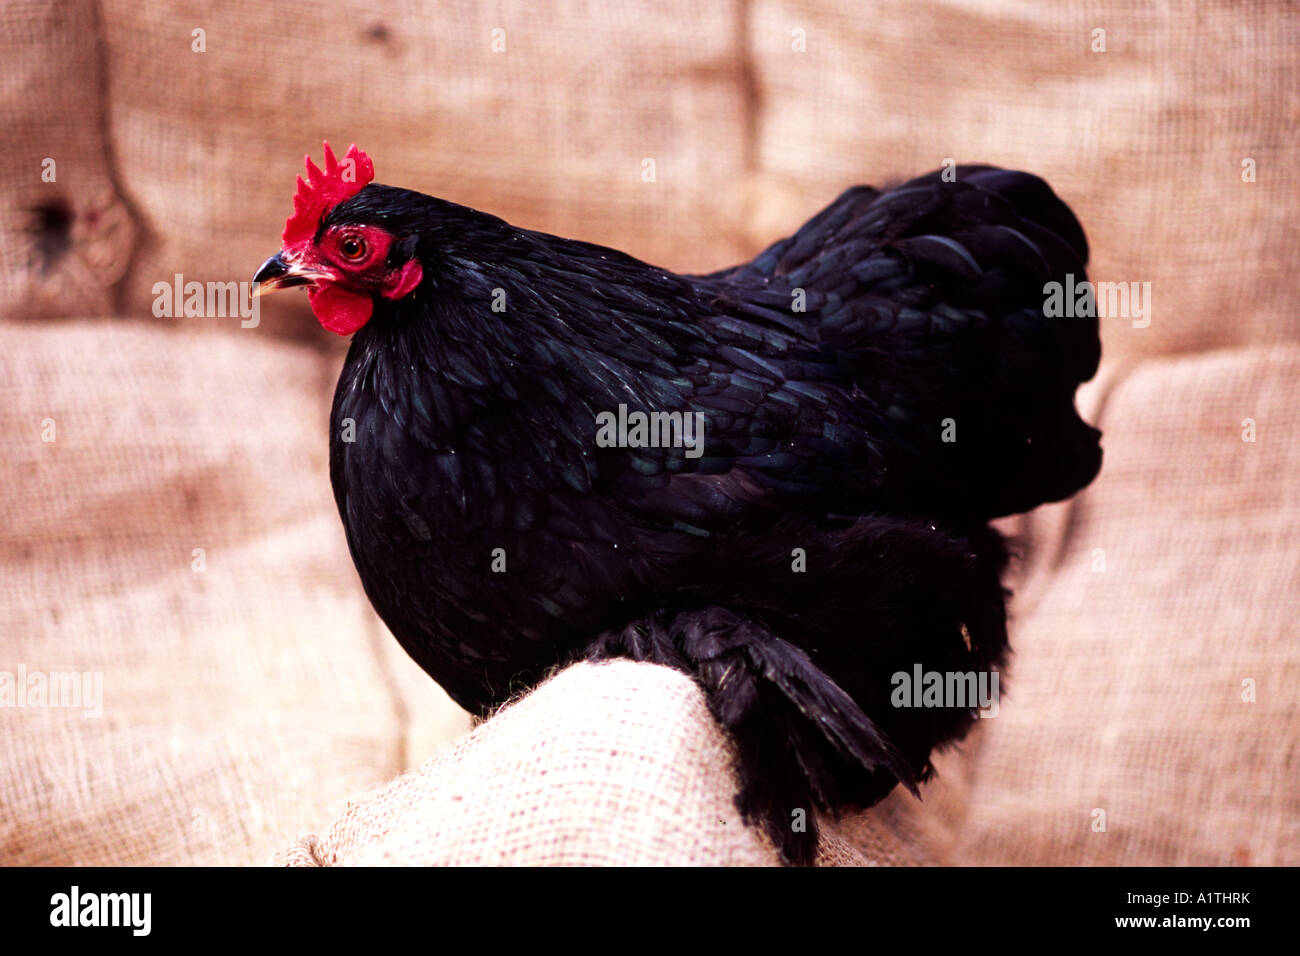 Poule bantam de Pékin noir. Une petite cour typique de la race de poulet. Banque D'Images